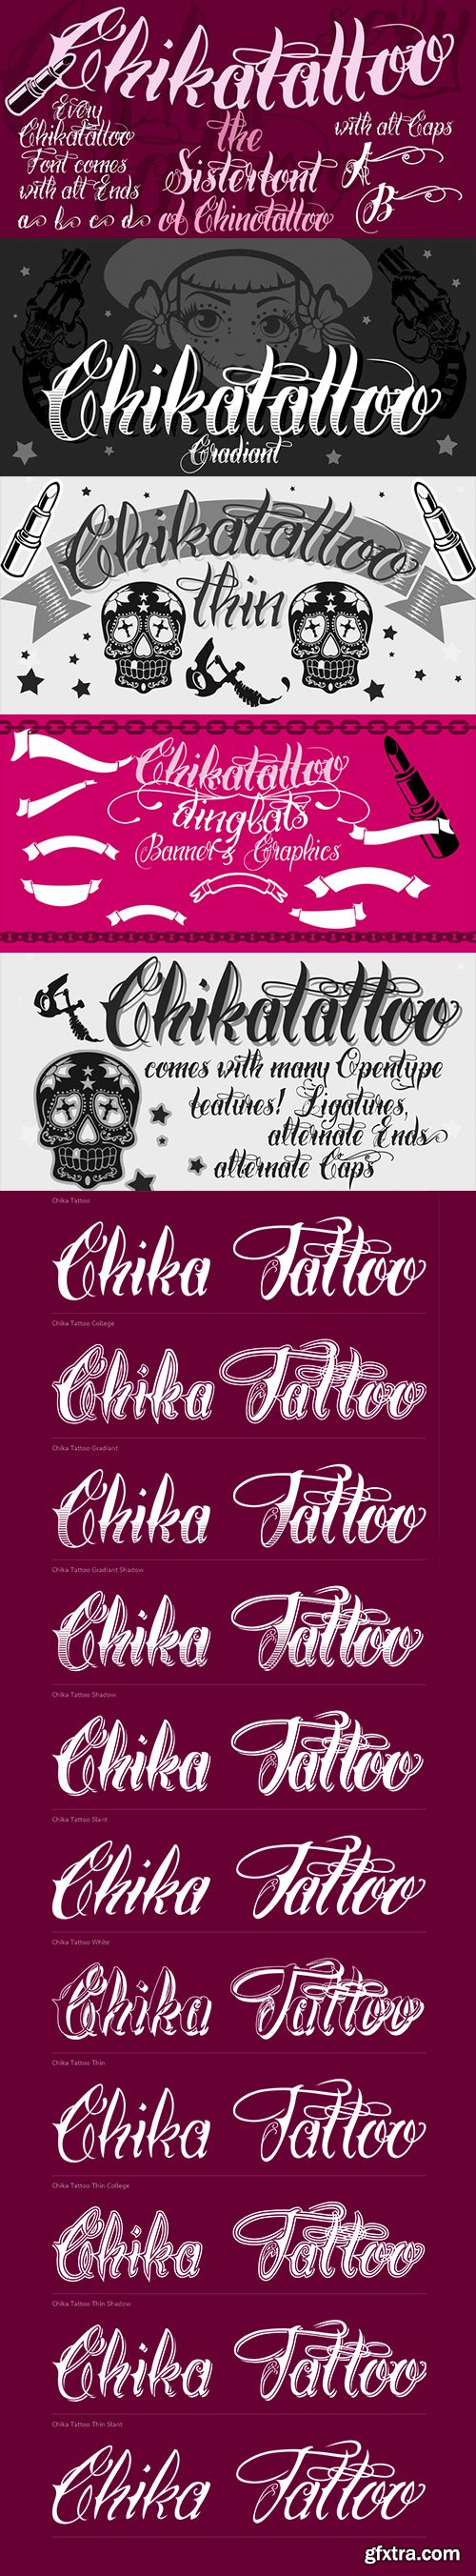 Chika Tattoo - Best for all Tattooartists 12xOTF $59 NEW!